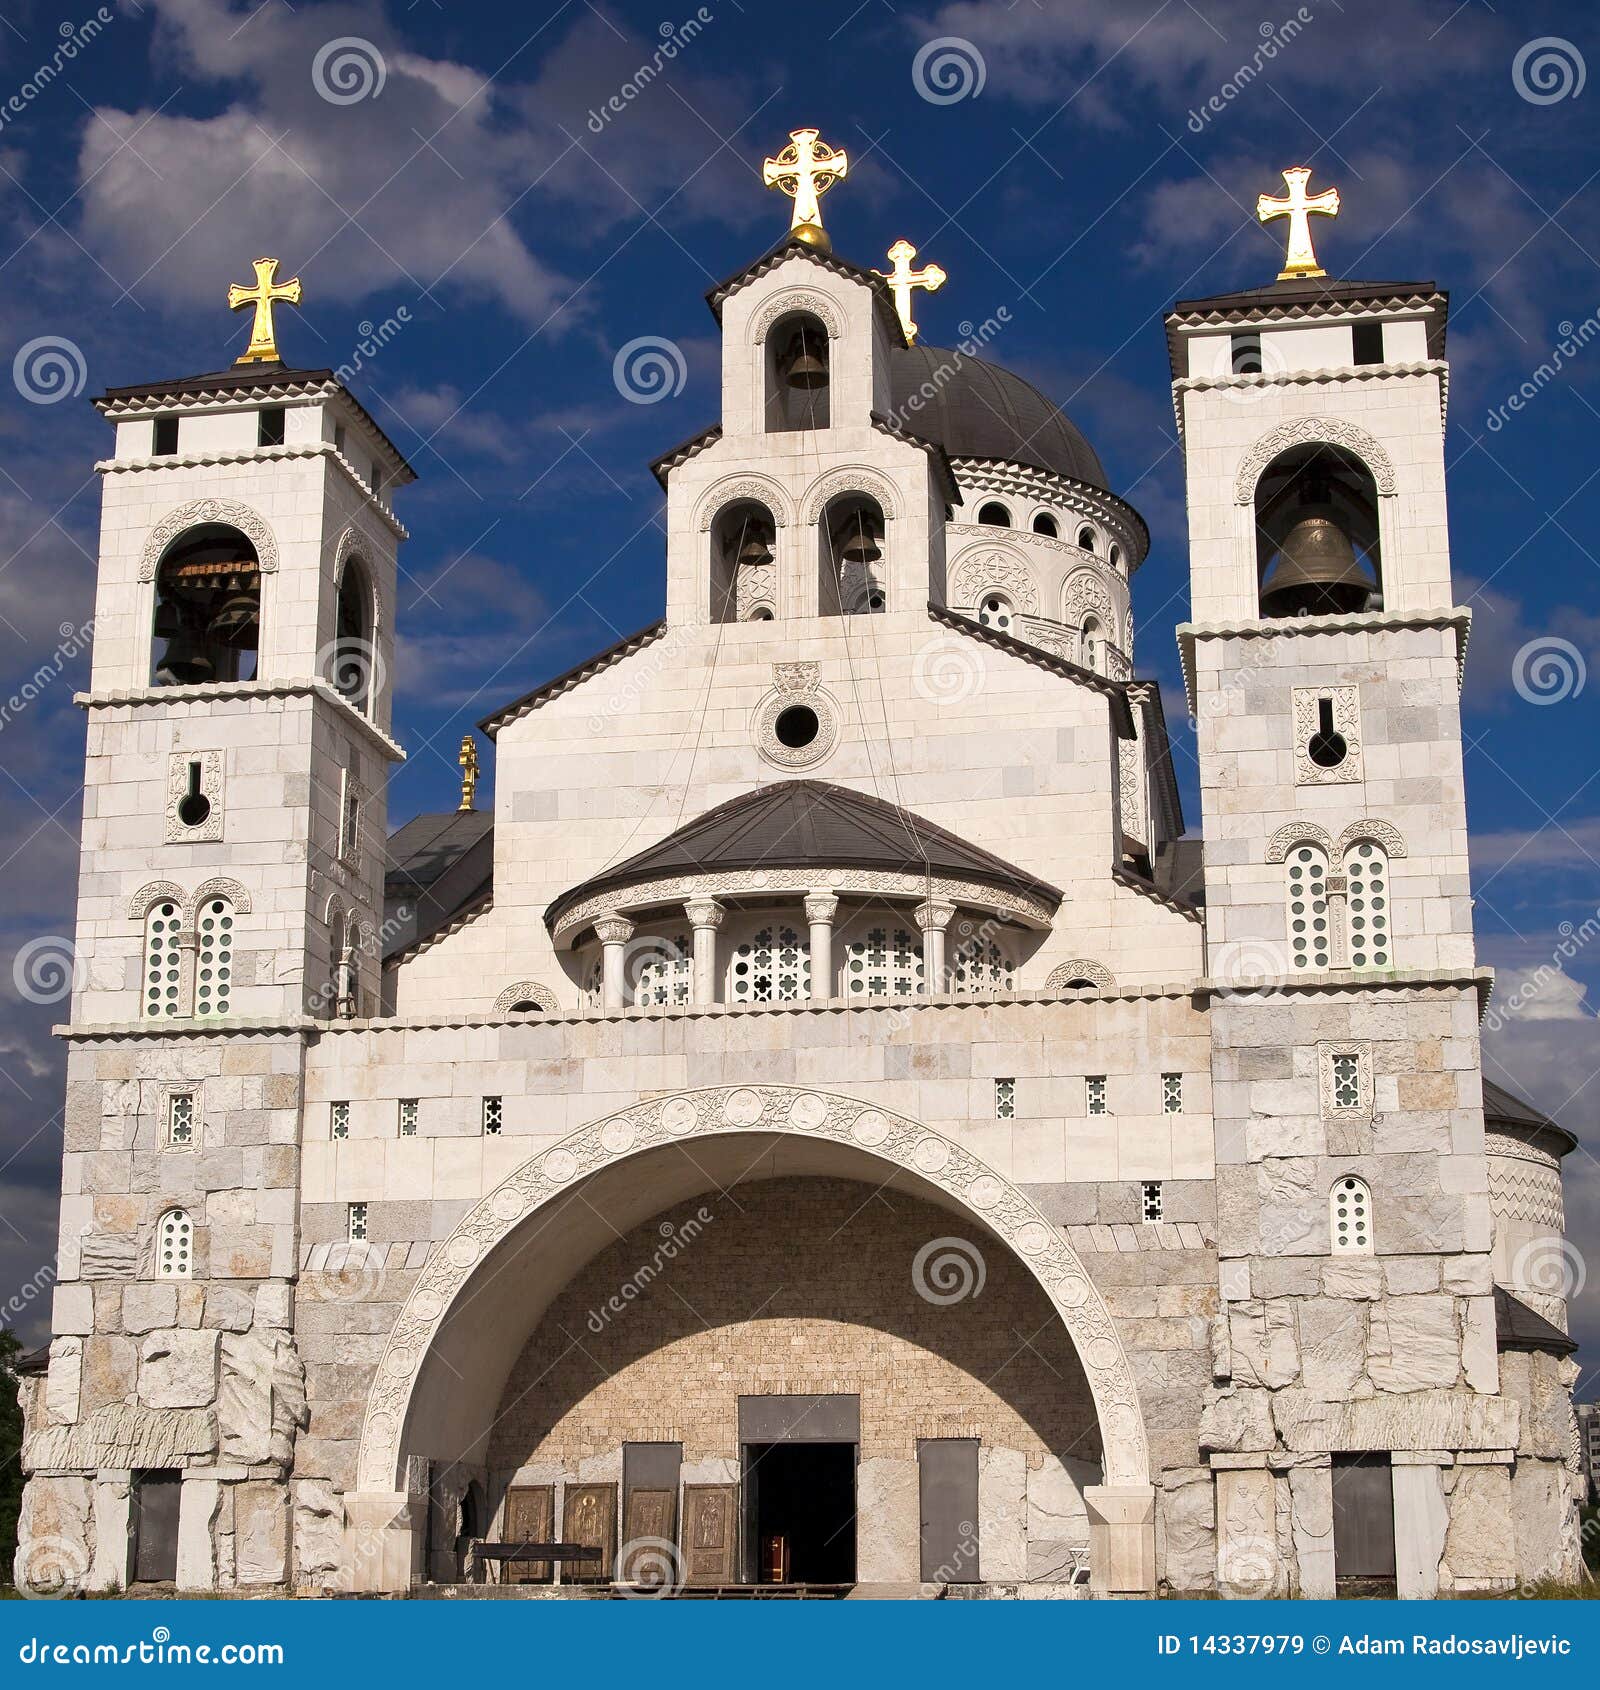 orthodox church in podgorica, montenegro